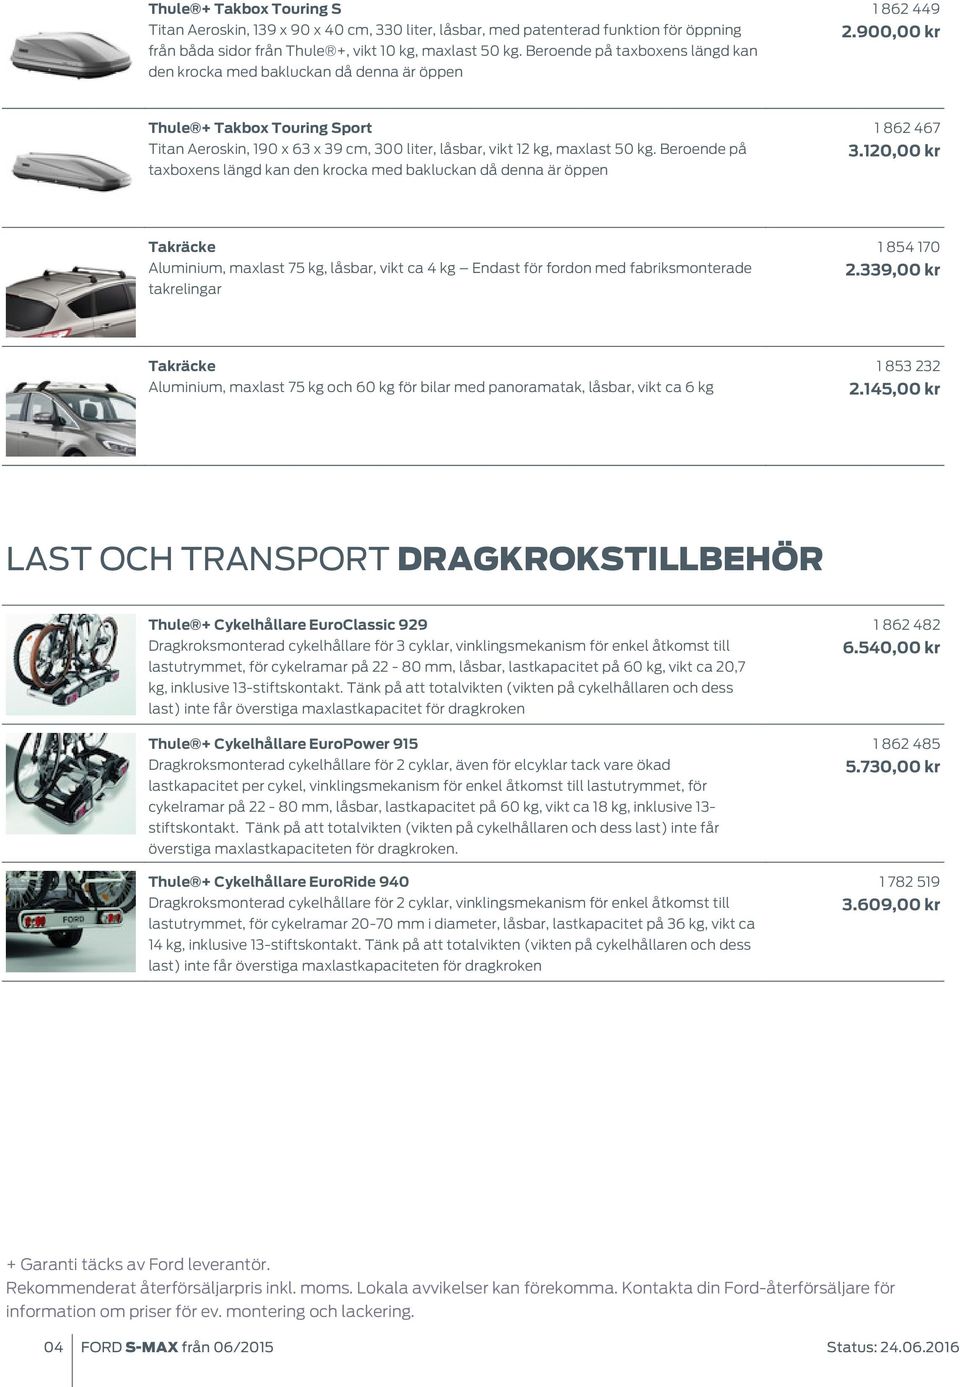 900,00 kr Thule + Takbox Touring Sport Titan Aeroskin, 190 x 63 x 39 cm, 300 liter, låsbar, vikt 12 kg, maxlast 50 kg.